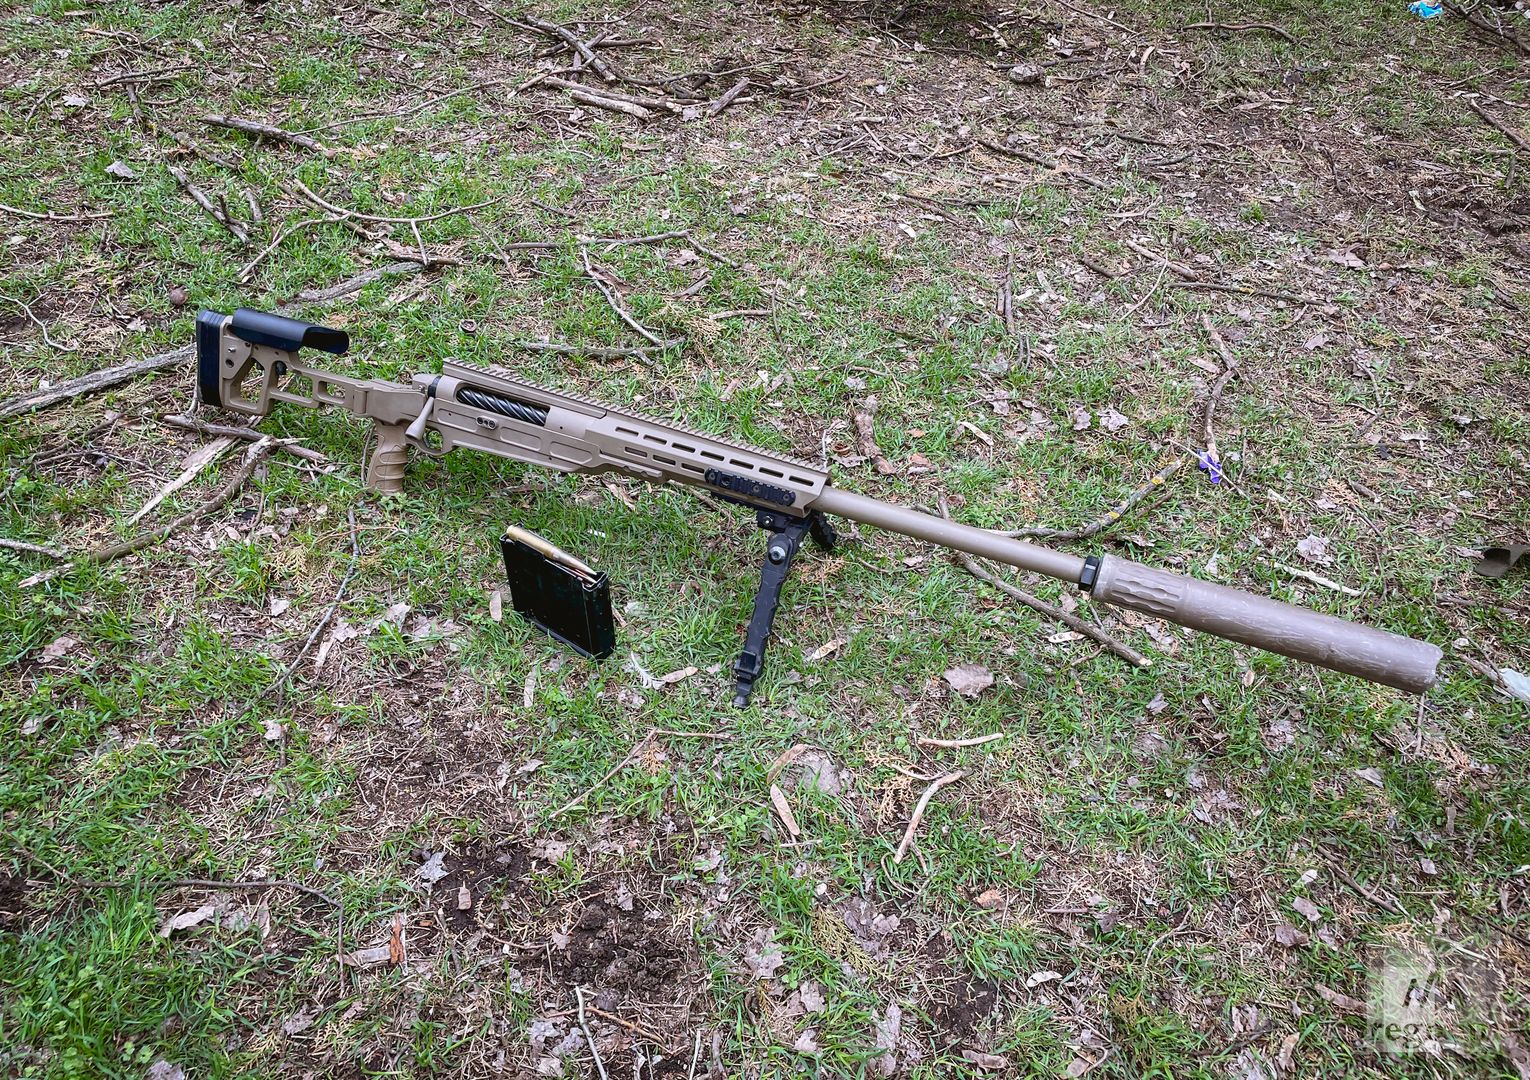 Снайперская винтовка, состоявшая на вооружении украинских нацистов